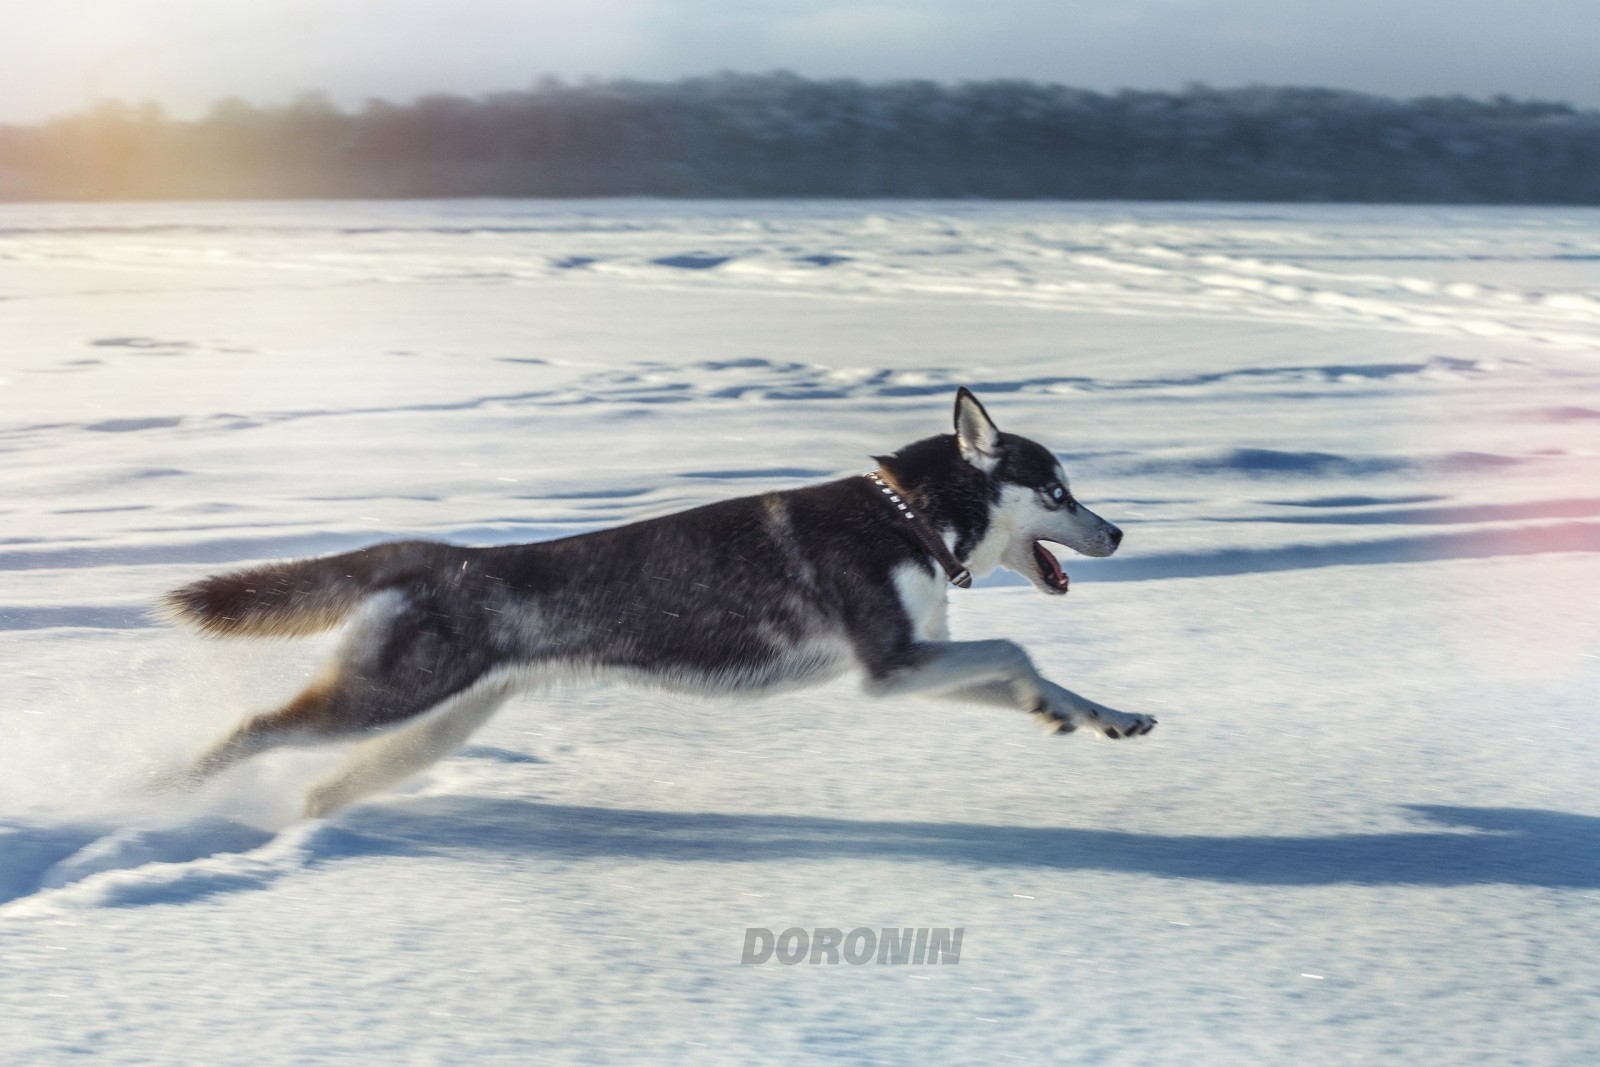 雪, 犬, 冬, ジャンプ, ランニング, 写真家, ハスキー, デニス・ドロニン